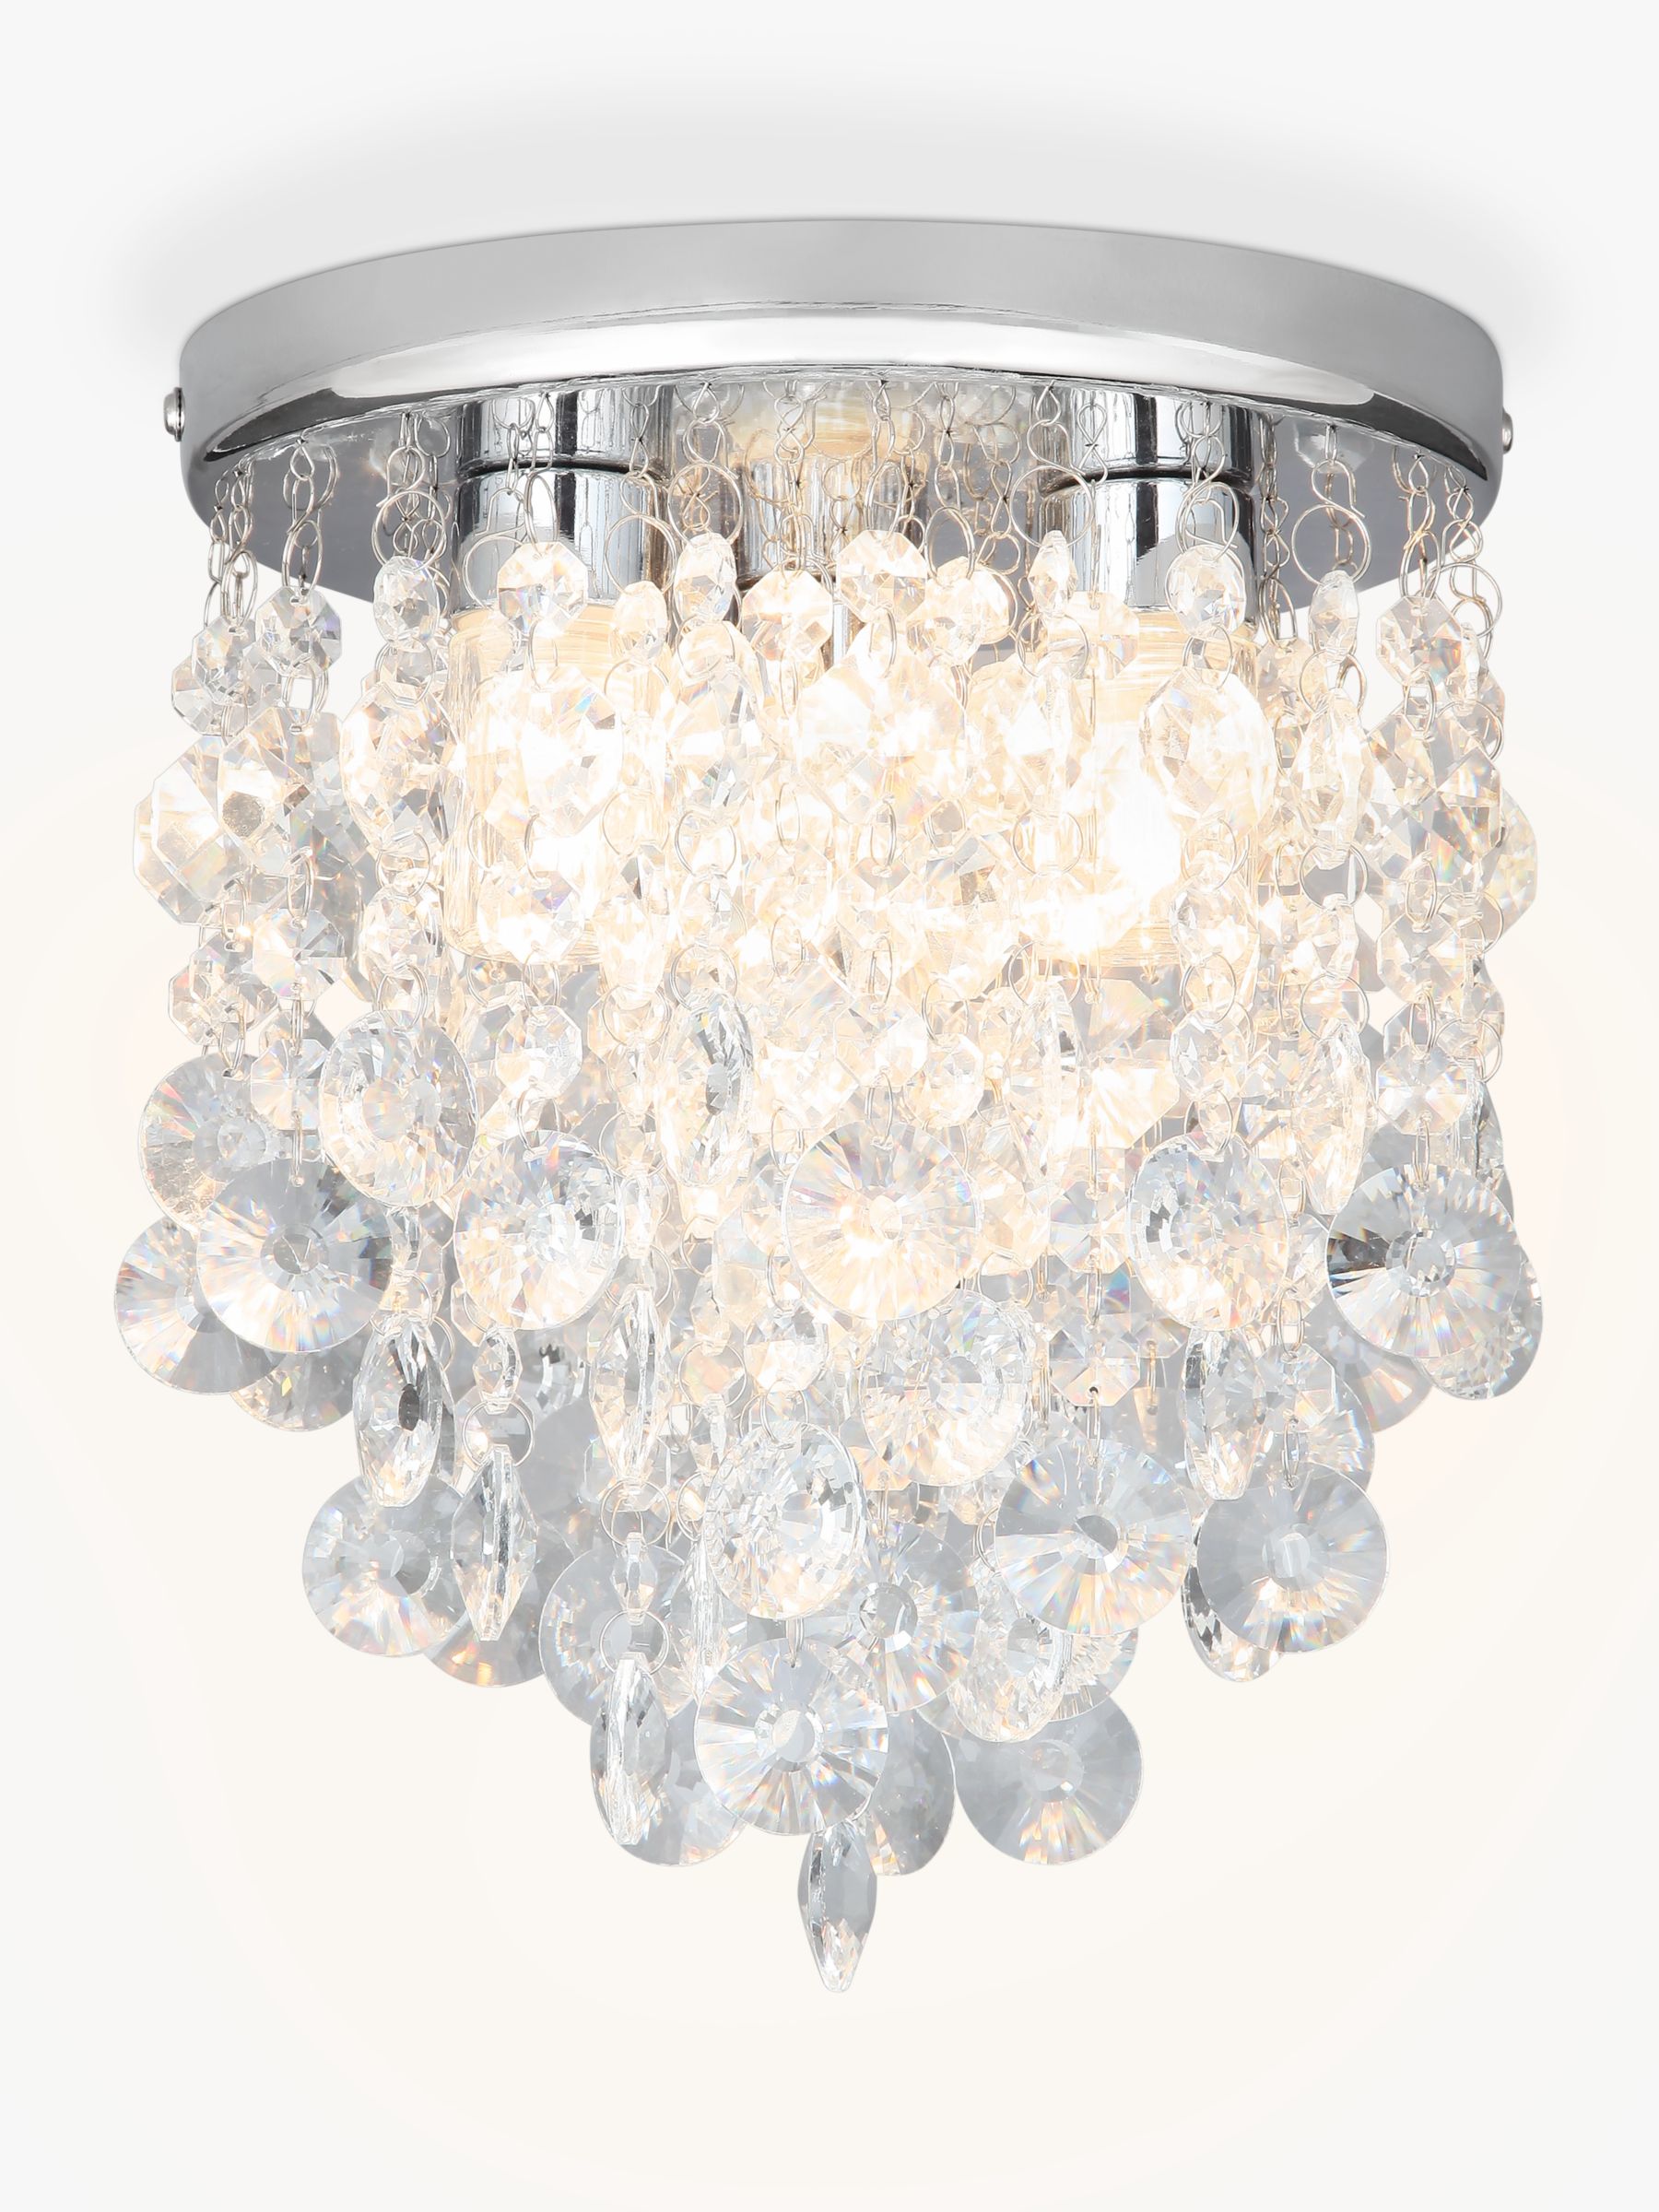 John Lewis Partners Katelyn Crystal Bathroom Flush Ceiling Light